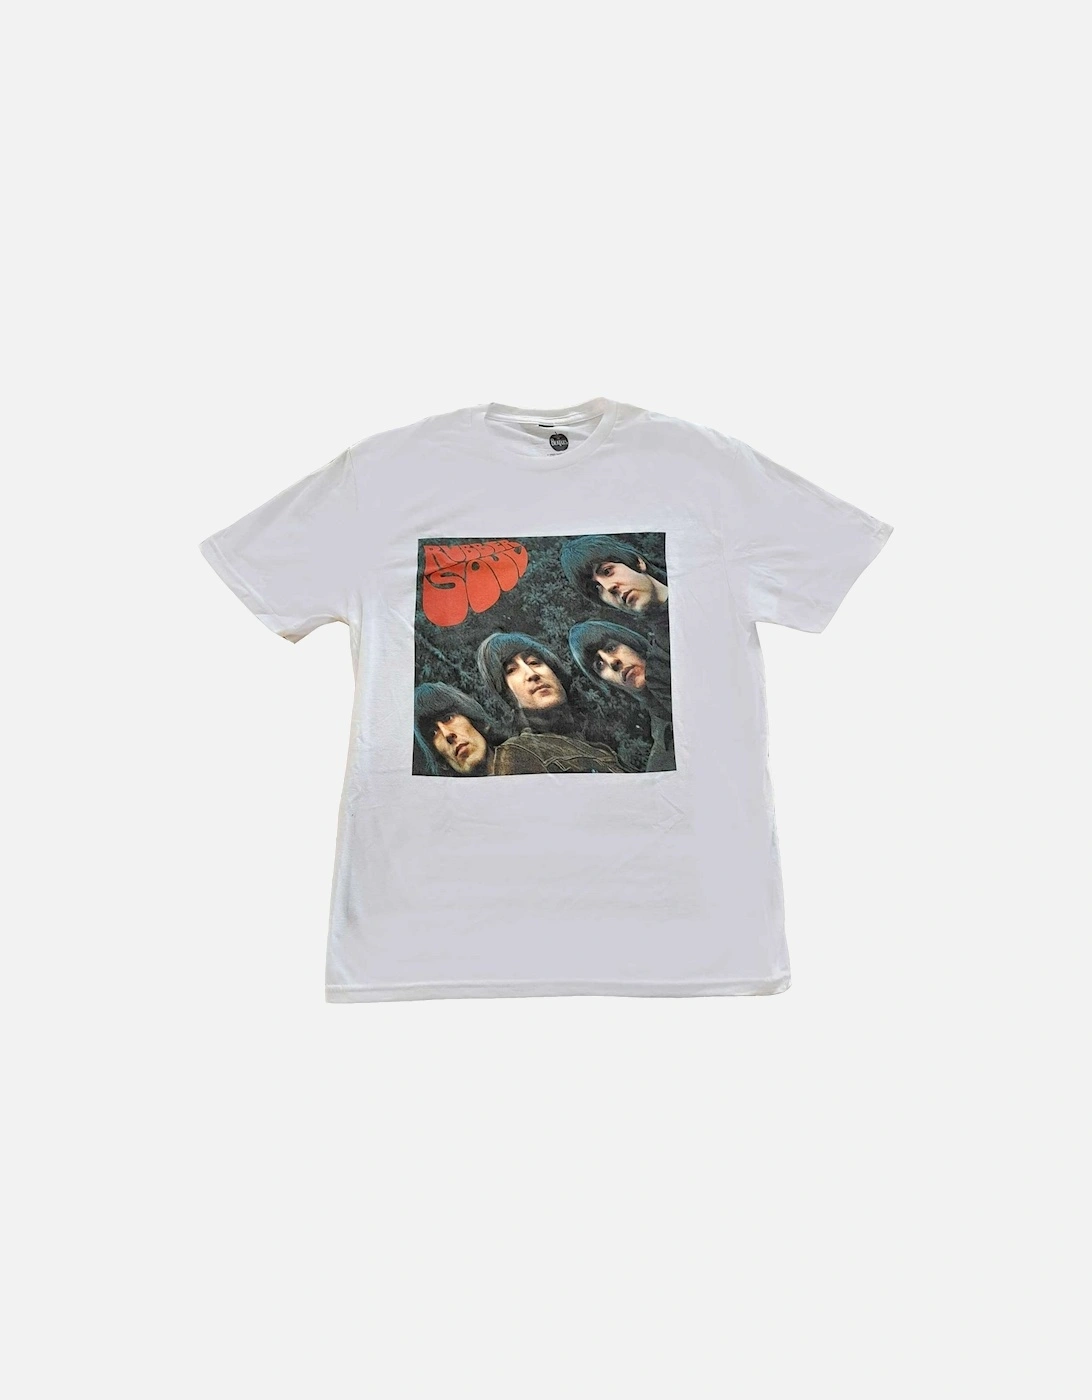 Unisex Adult Rubber Soul Album Ringspun Cotton T-Shirt, 2 of 1